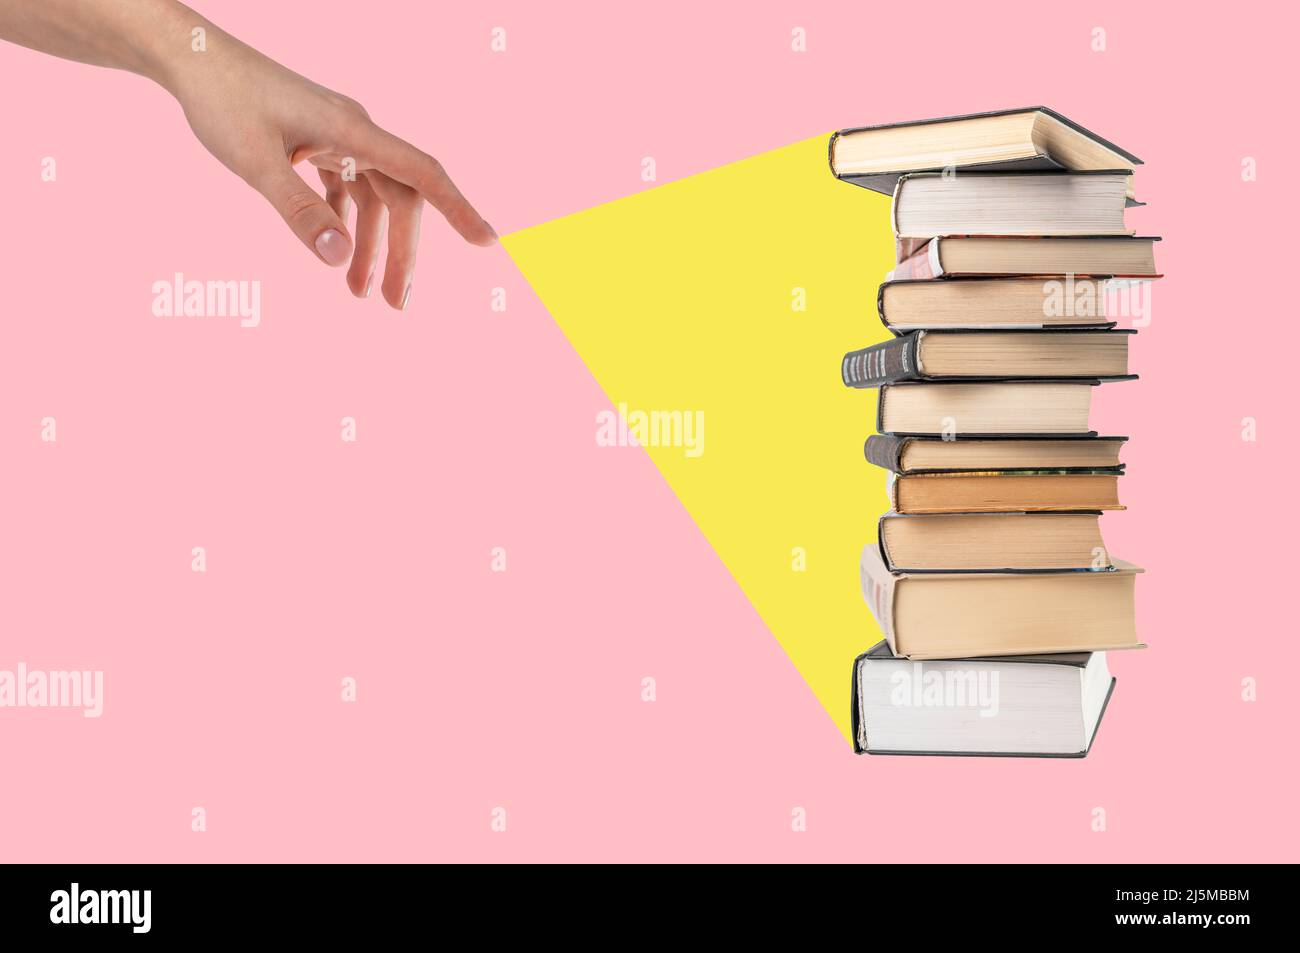 Raggio di luce proveniente dalla mano della donna a libri impilati su sfondo rosa. Istruzione, conoscenza, concetto di saggezza. Collage. Foto di alta qualità Foto Stock